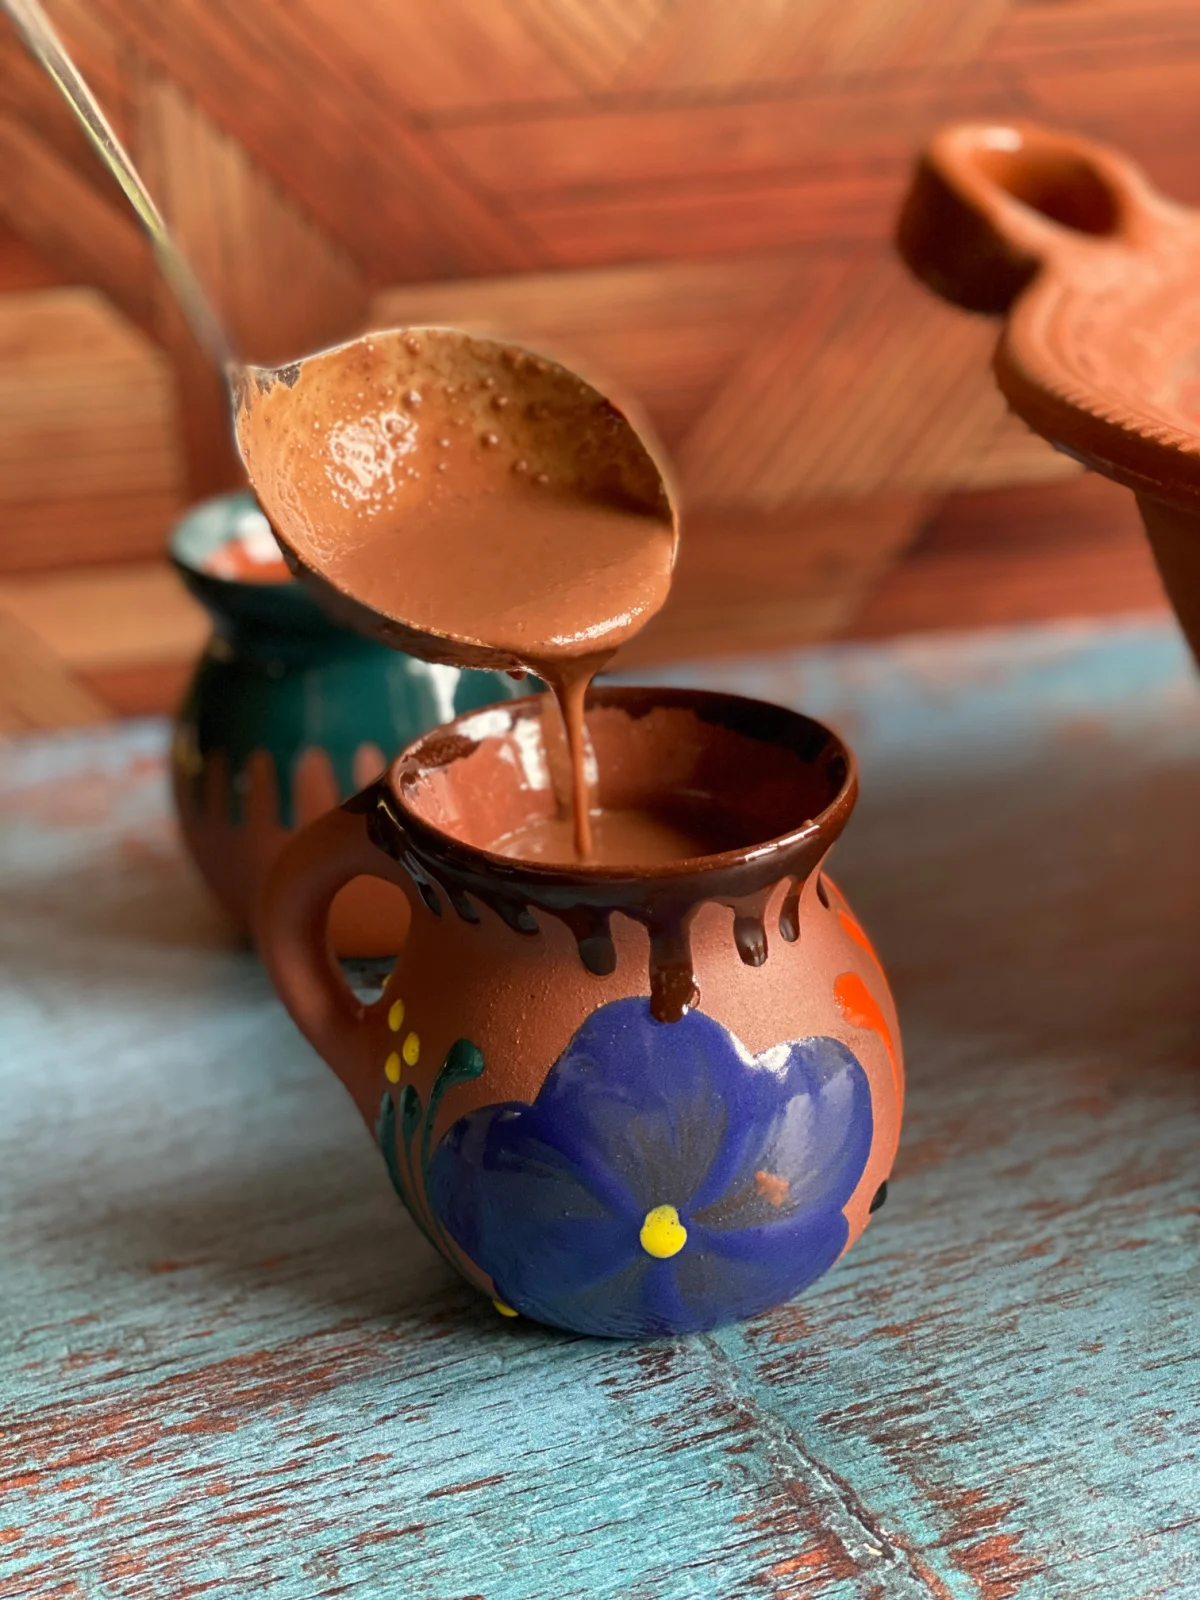 La masa de cacao puede usarse como base para champurrado, una bebida caliente espesa de chocolate similar al atole. En esta imagen vemos cómo servirlo a un jarrito.